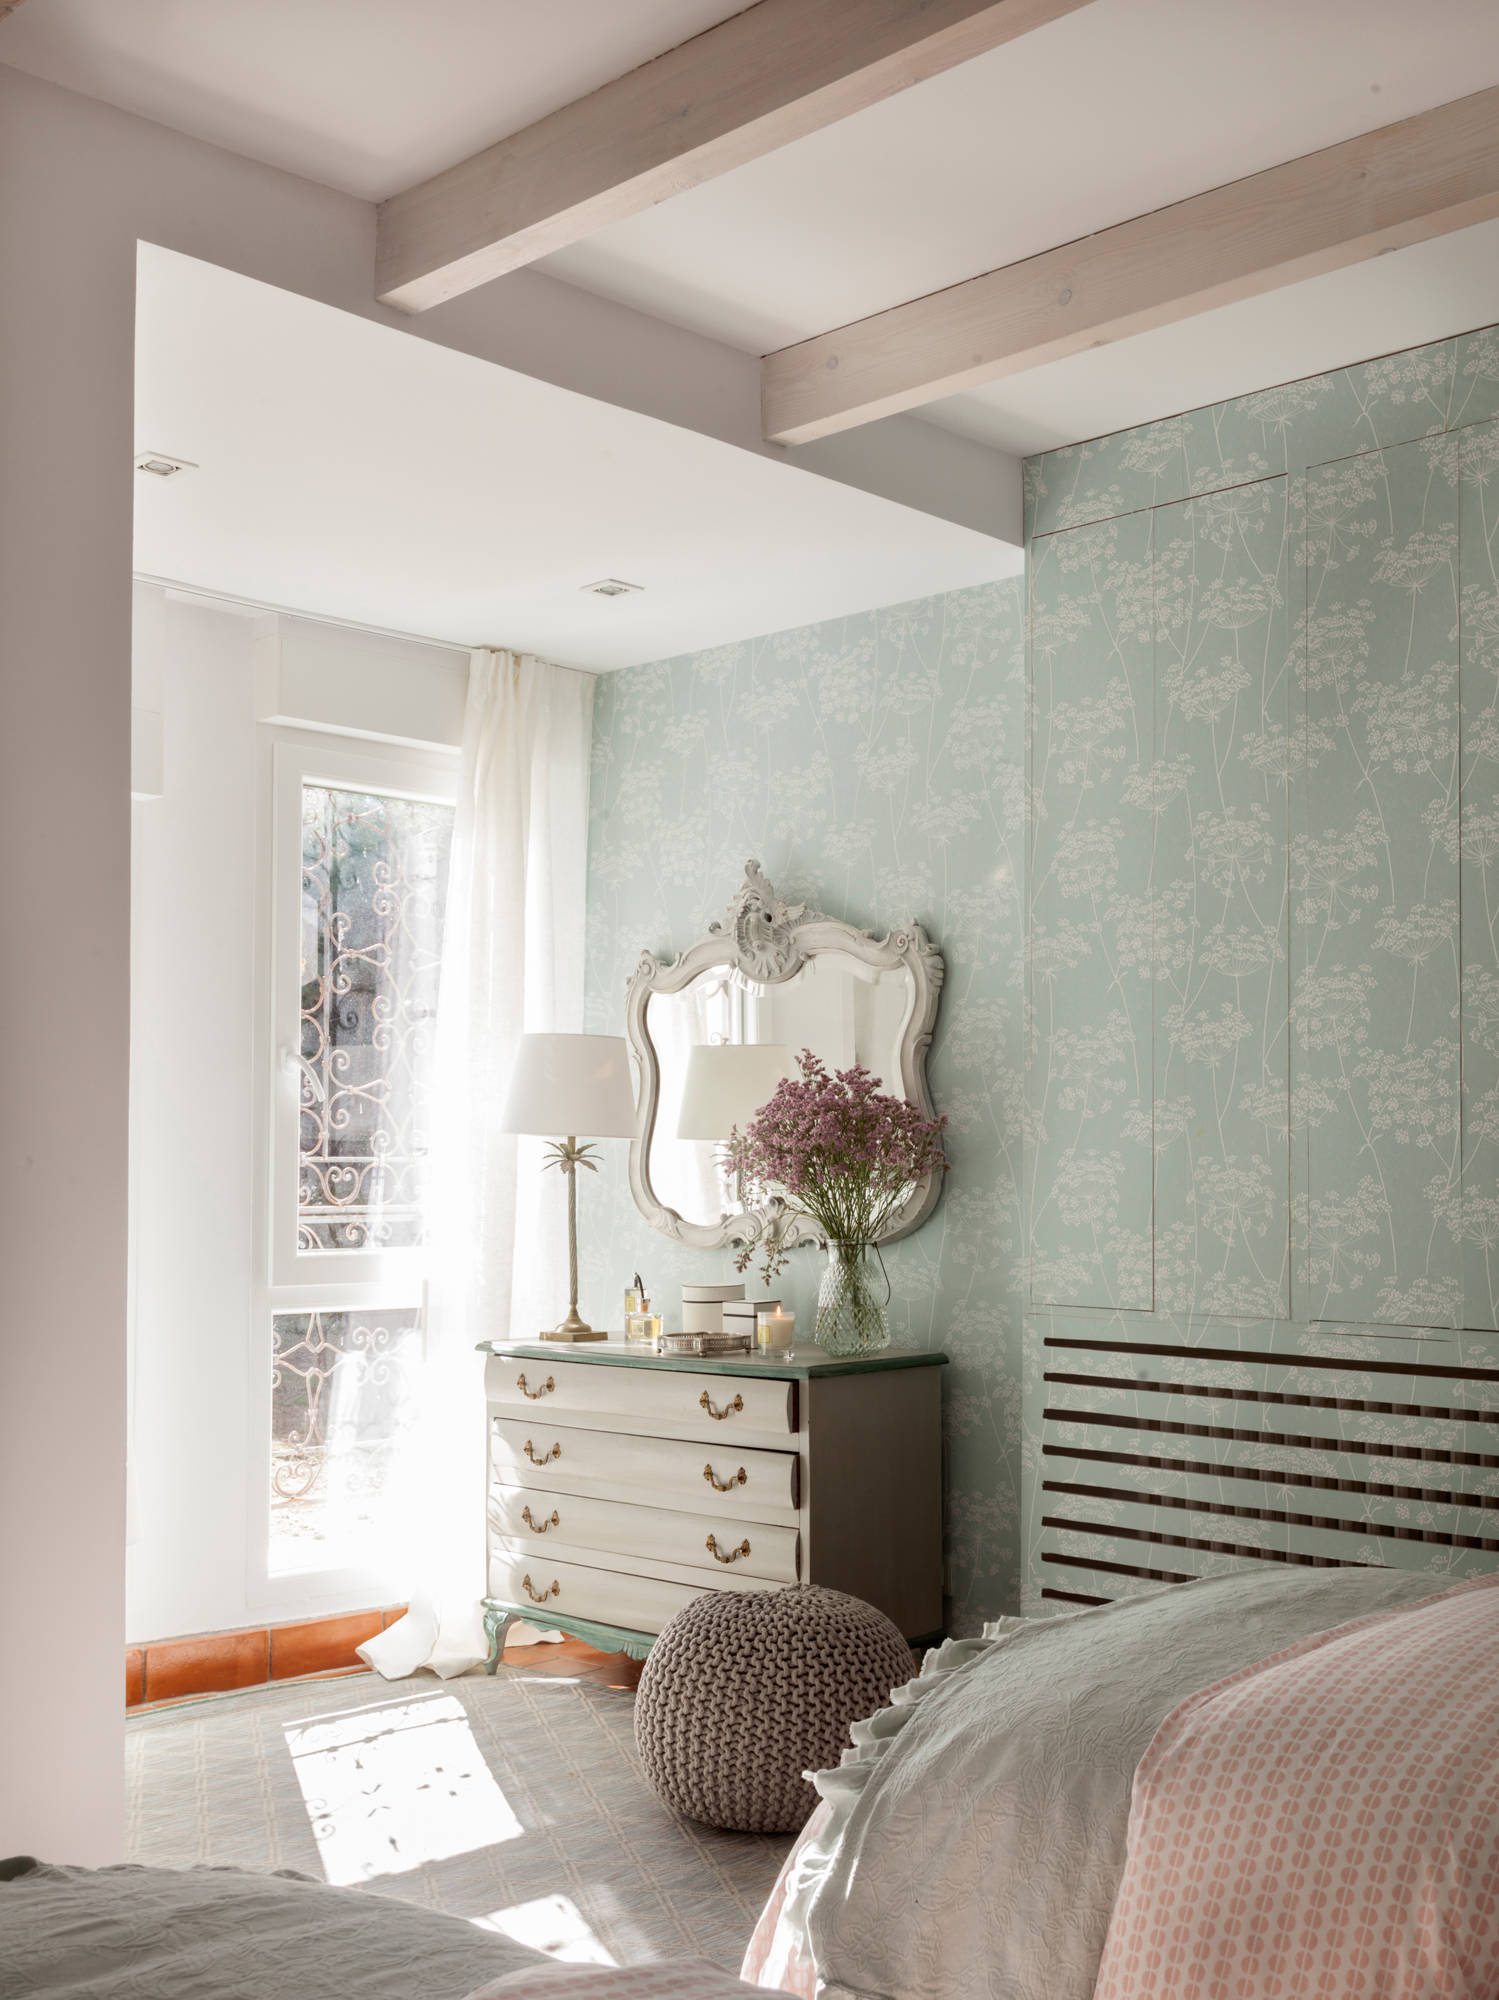 Dormitorio con cubre radiador camuflado con papel pintado.